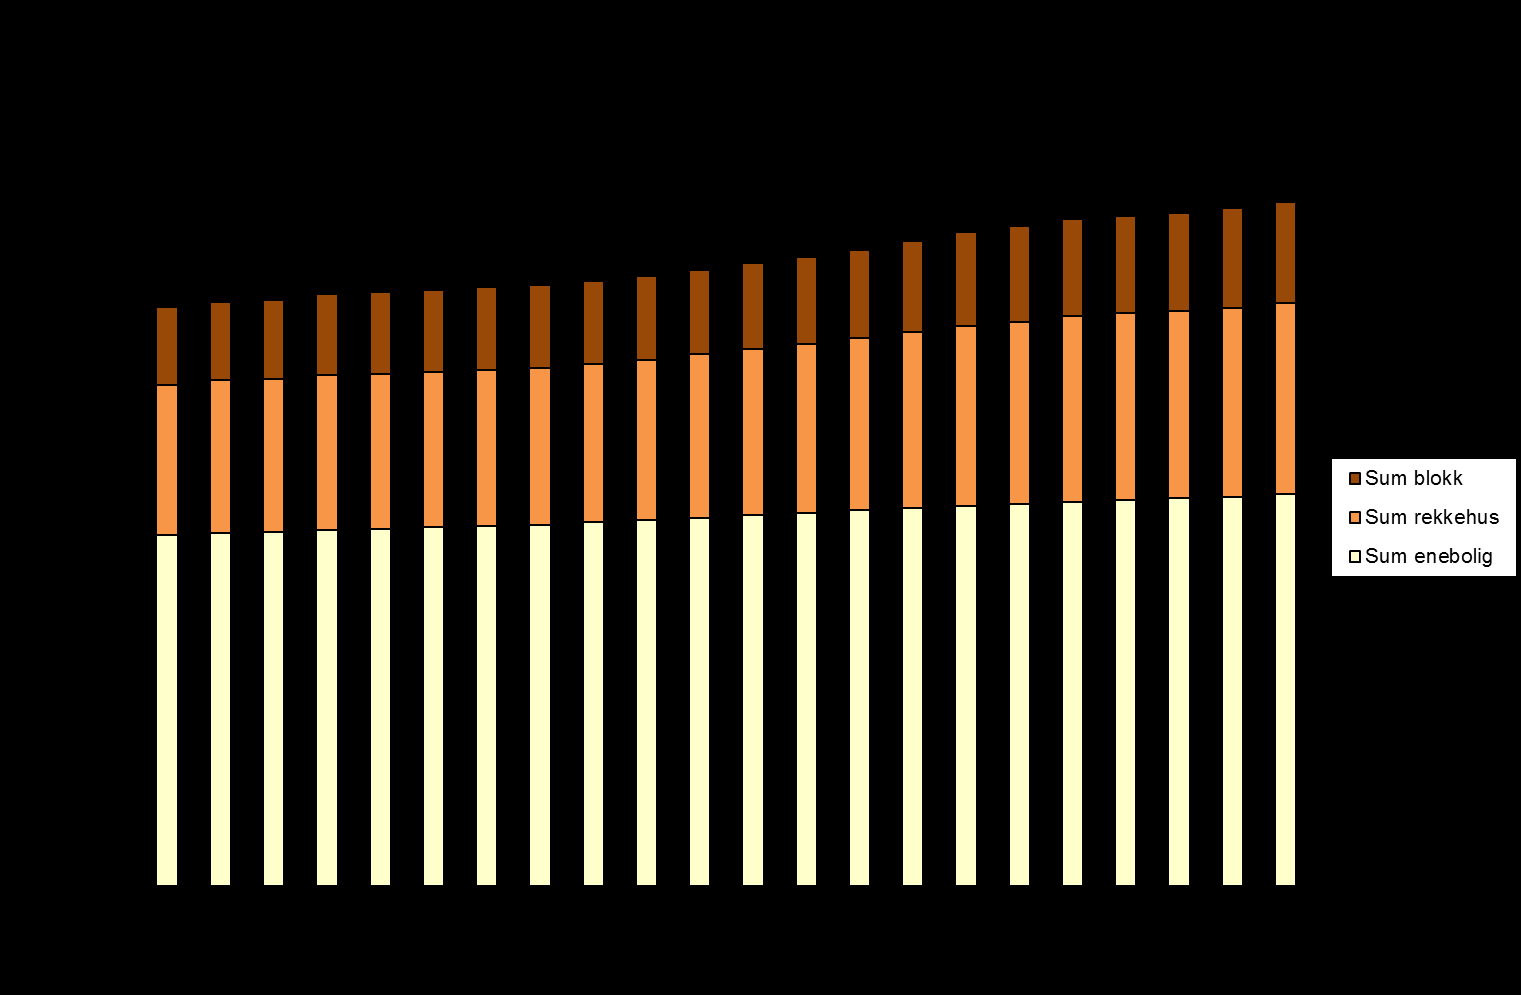 Hvordan skal Sarpsborg vokse rapport 23 2.2.2 Arbeidsplasser I 2011 var det registrert 22 846 sysselsatte i Sarpsborg kommune (kilde SSB/Statistikkbanken).